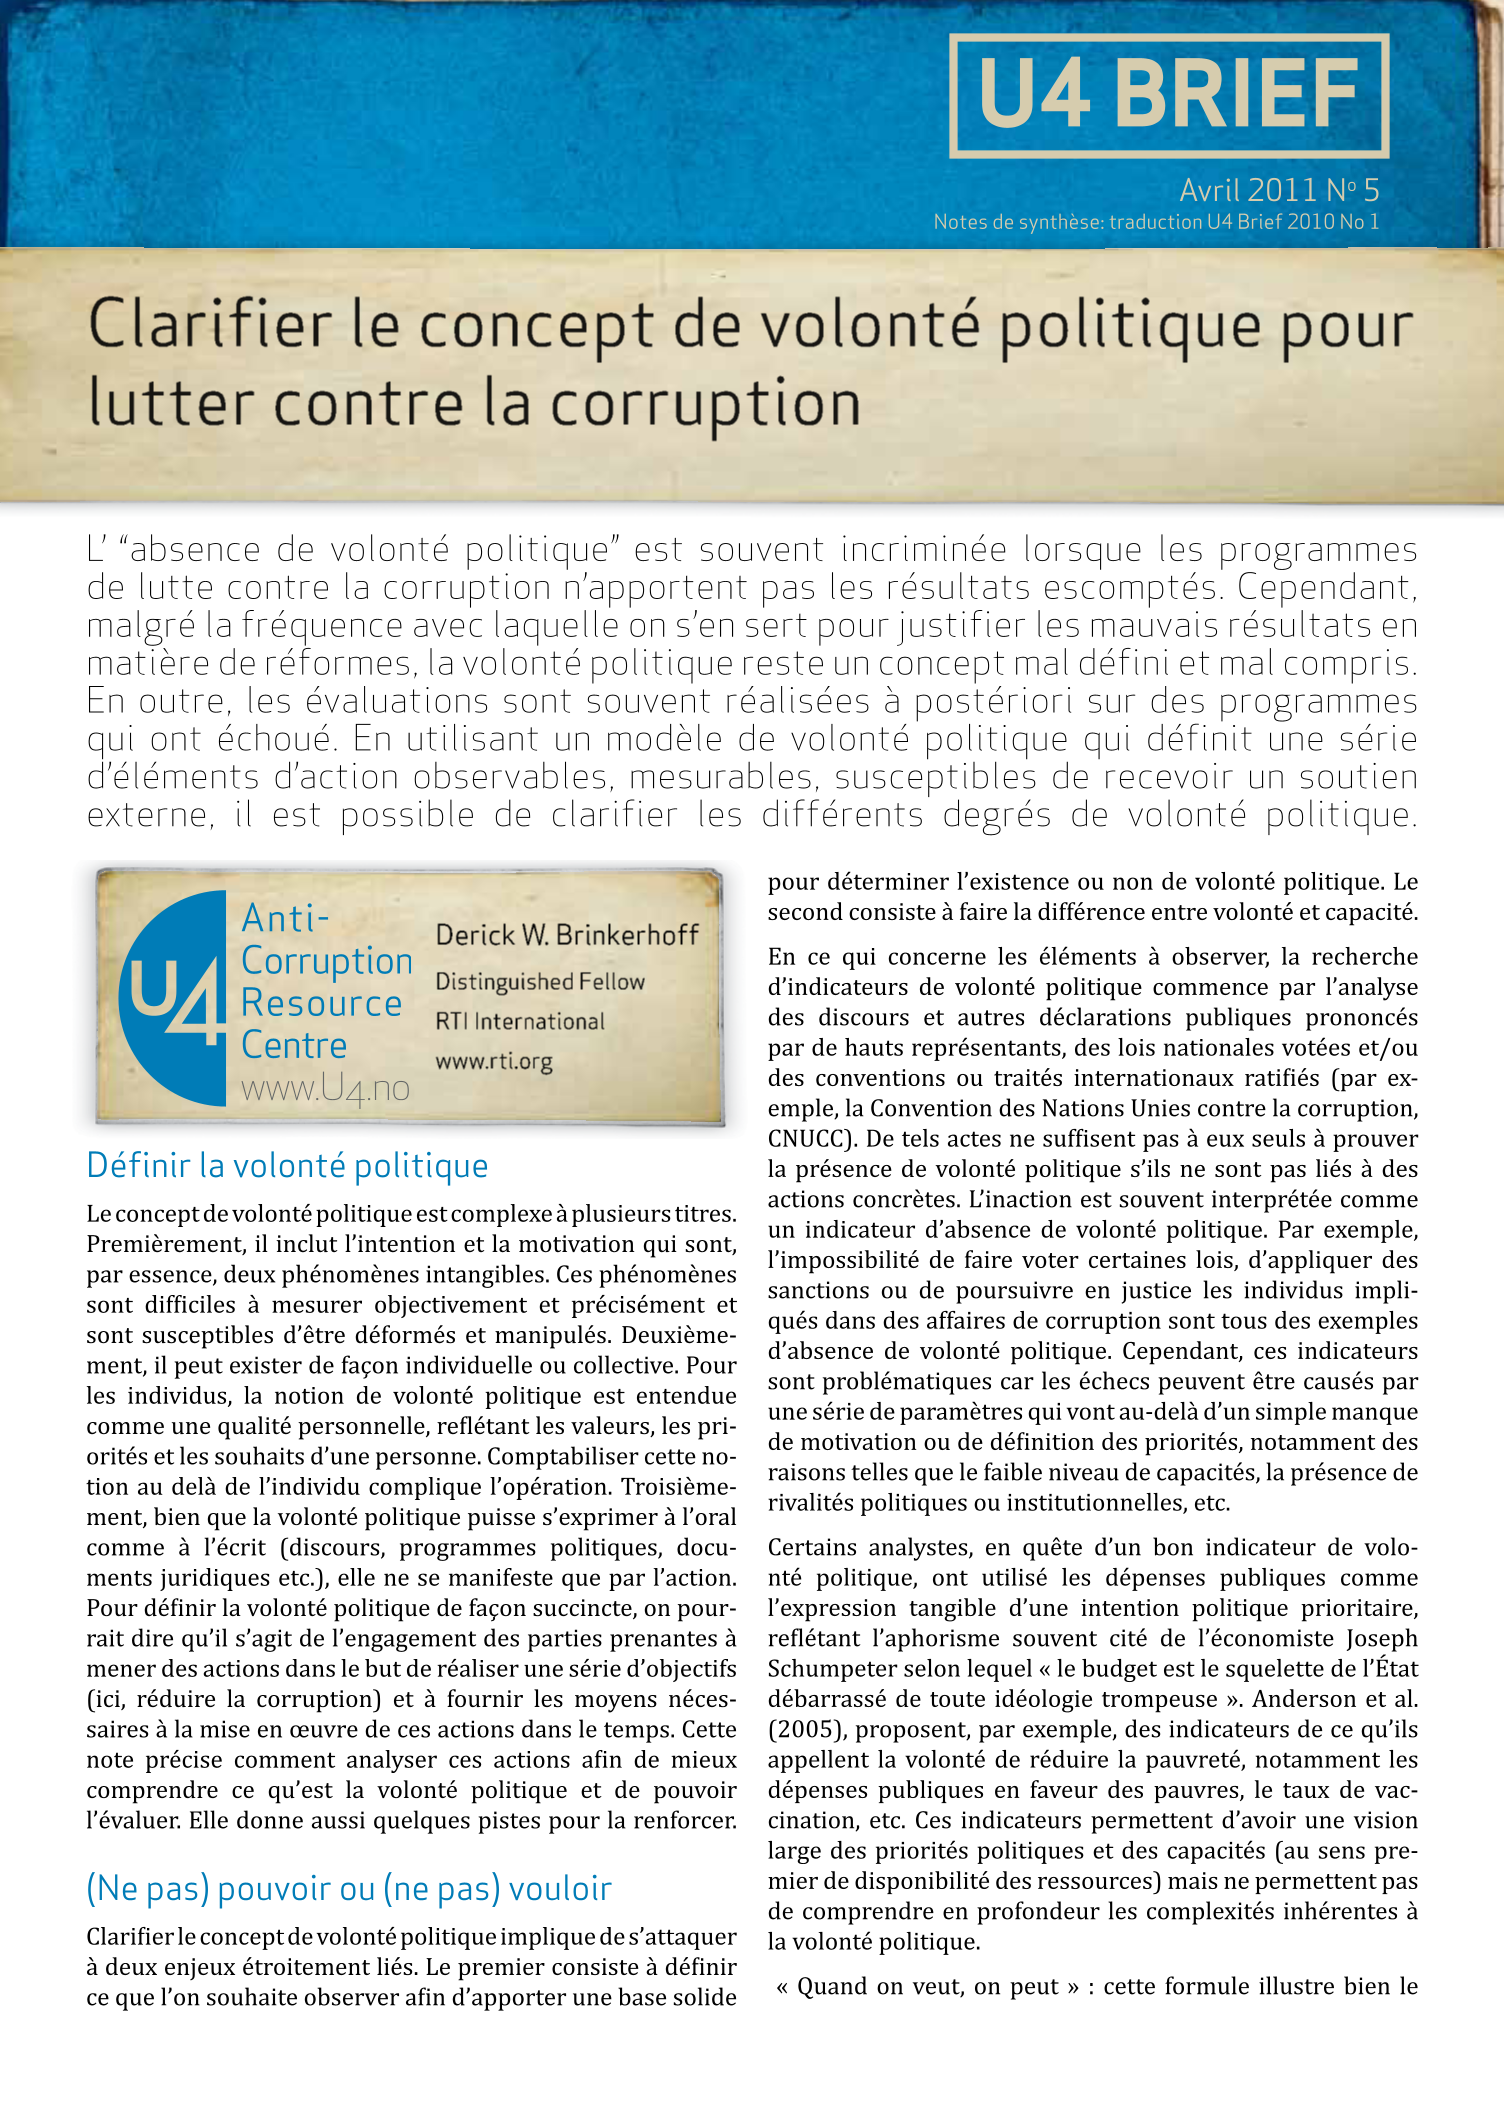 Clarifier le concept de volonté politique pour lutter contre la corruption